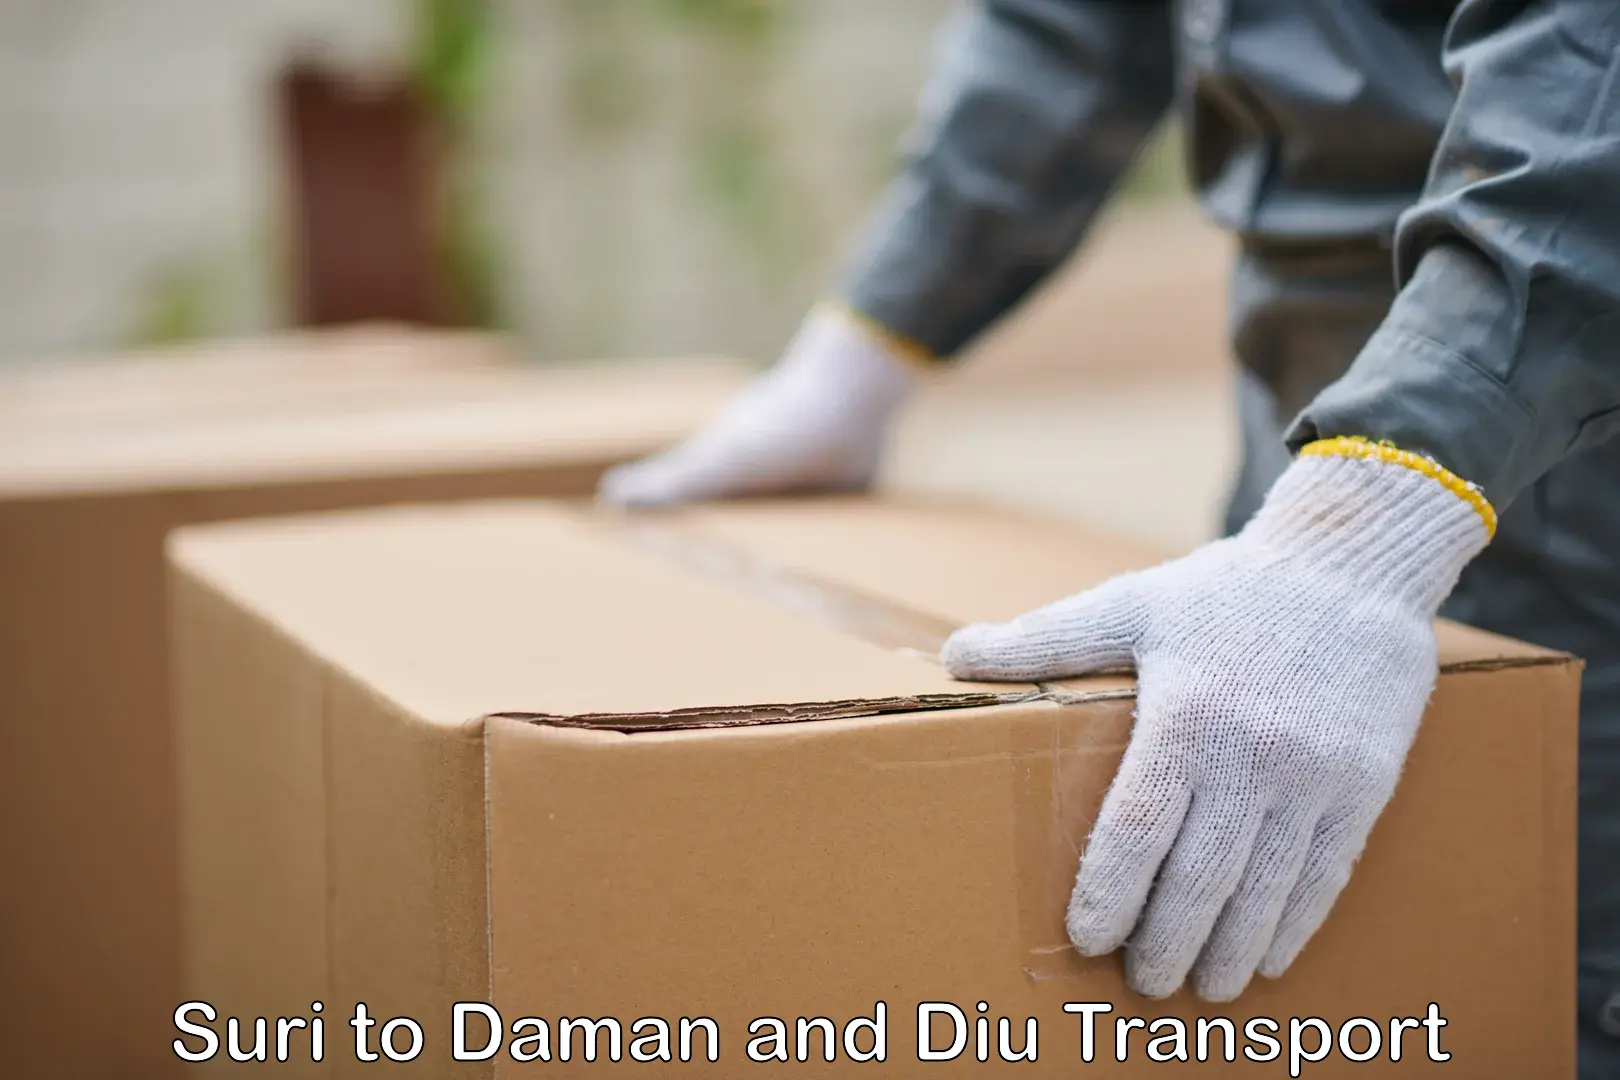 Daily transport service Suri to Daman and Diu